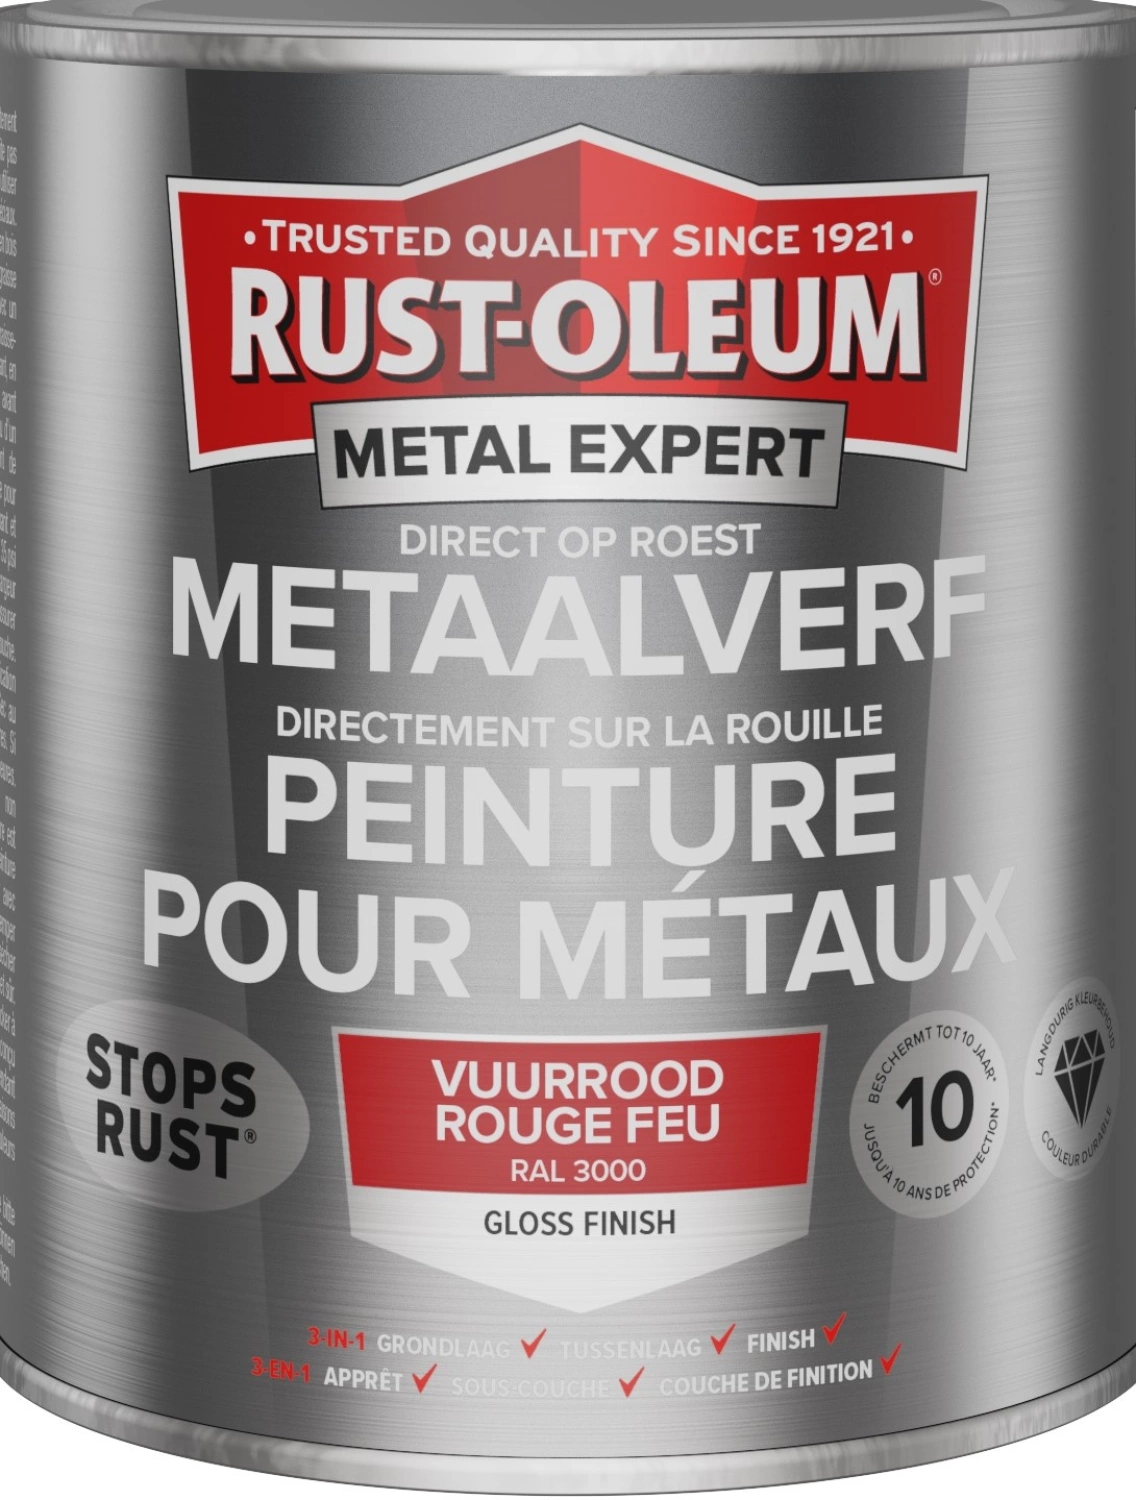 Rust-Oleum MetalExpert Hoogglans - RAL 3000 vuurrood - 0,25L-image